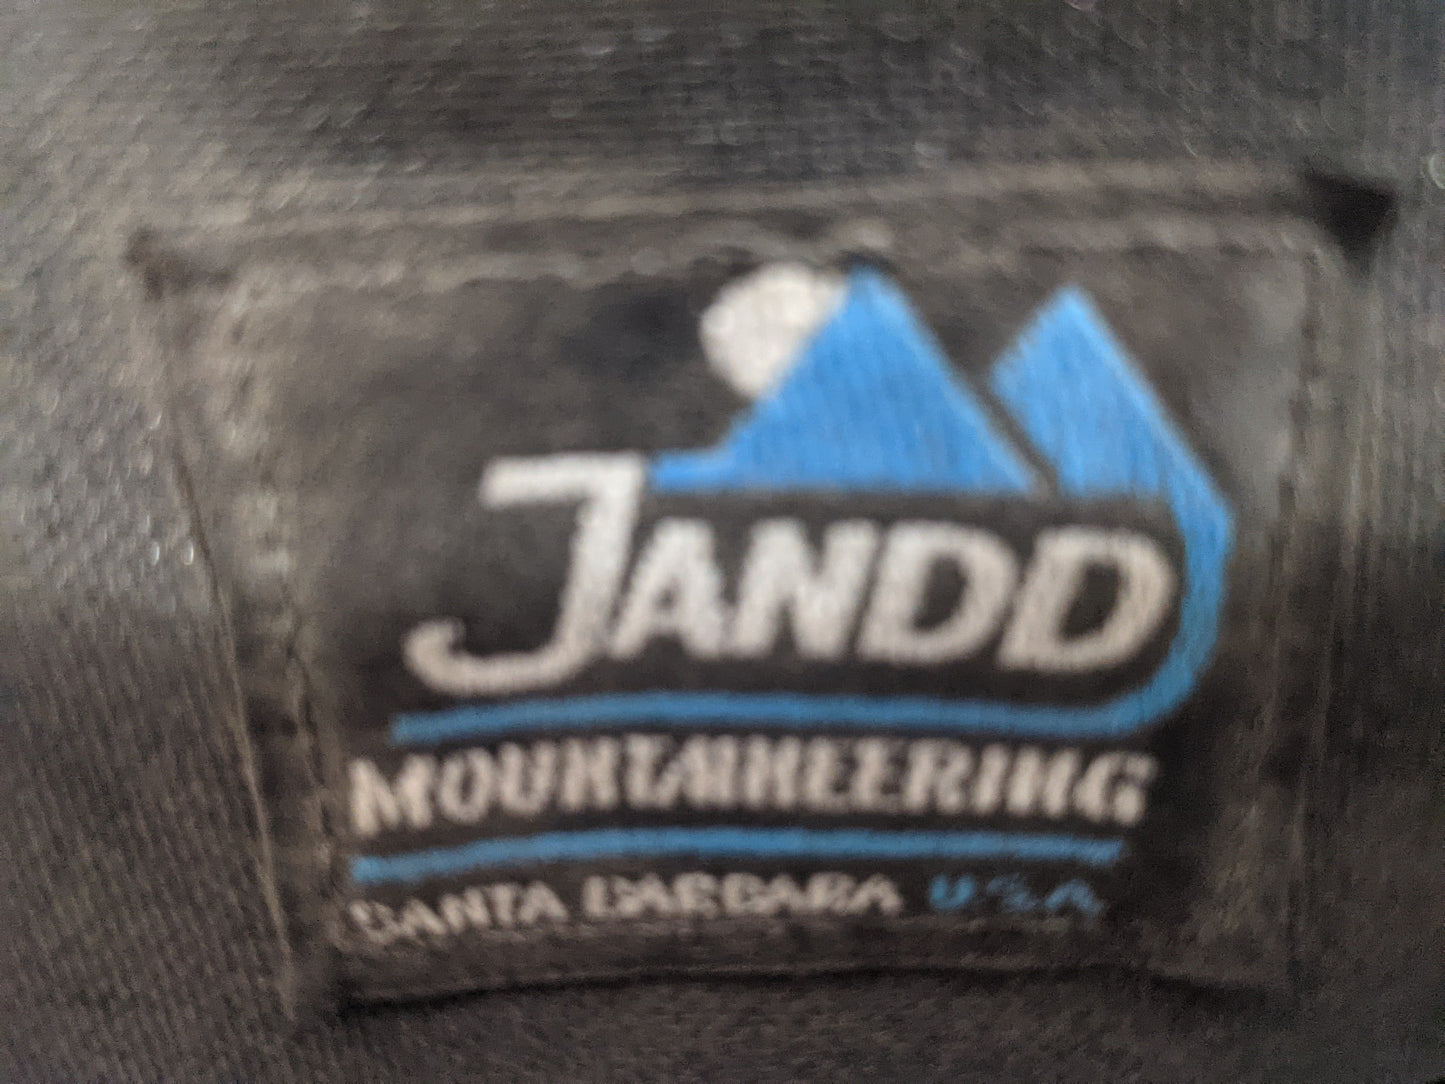 Jando Mountain Wedge II Bicycle Bag Used Black